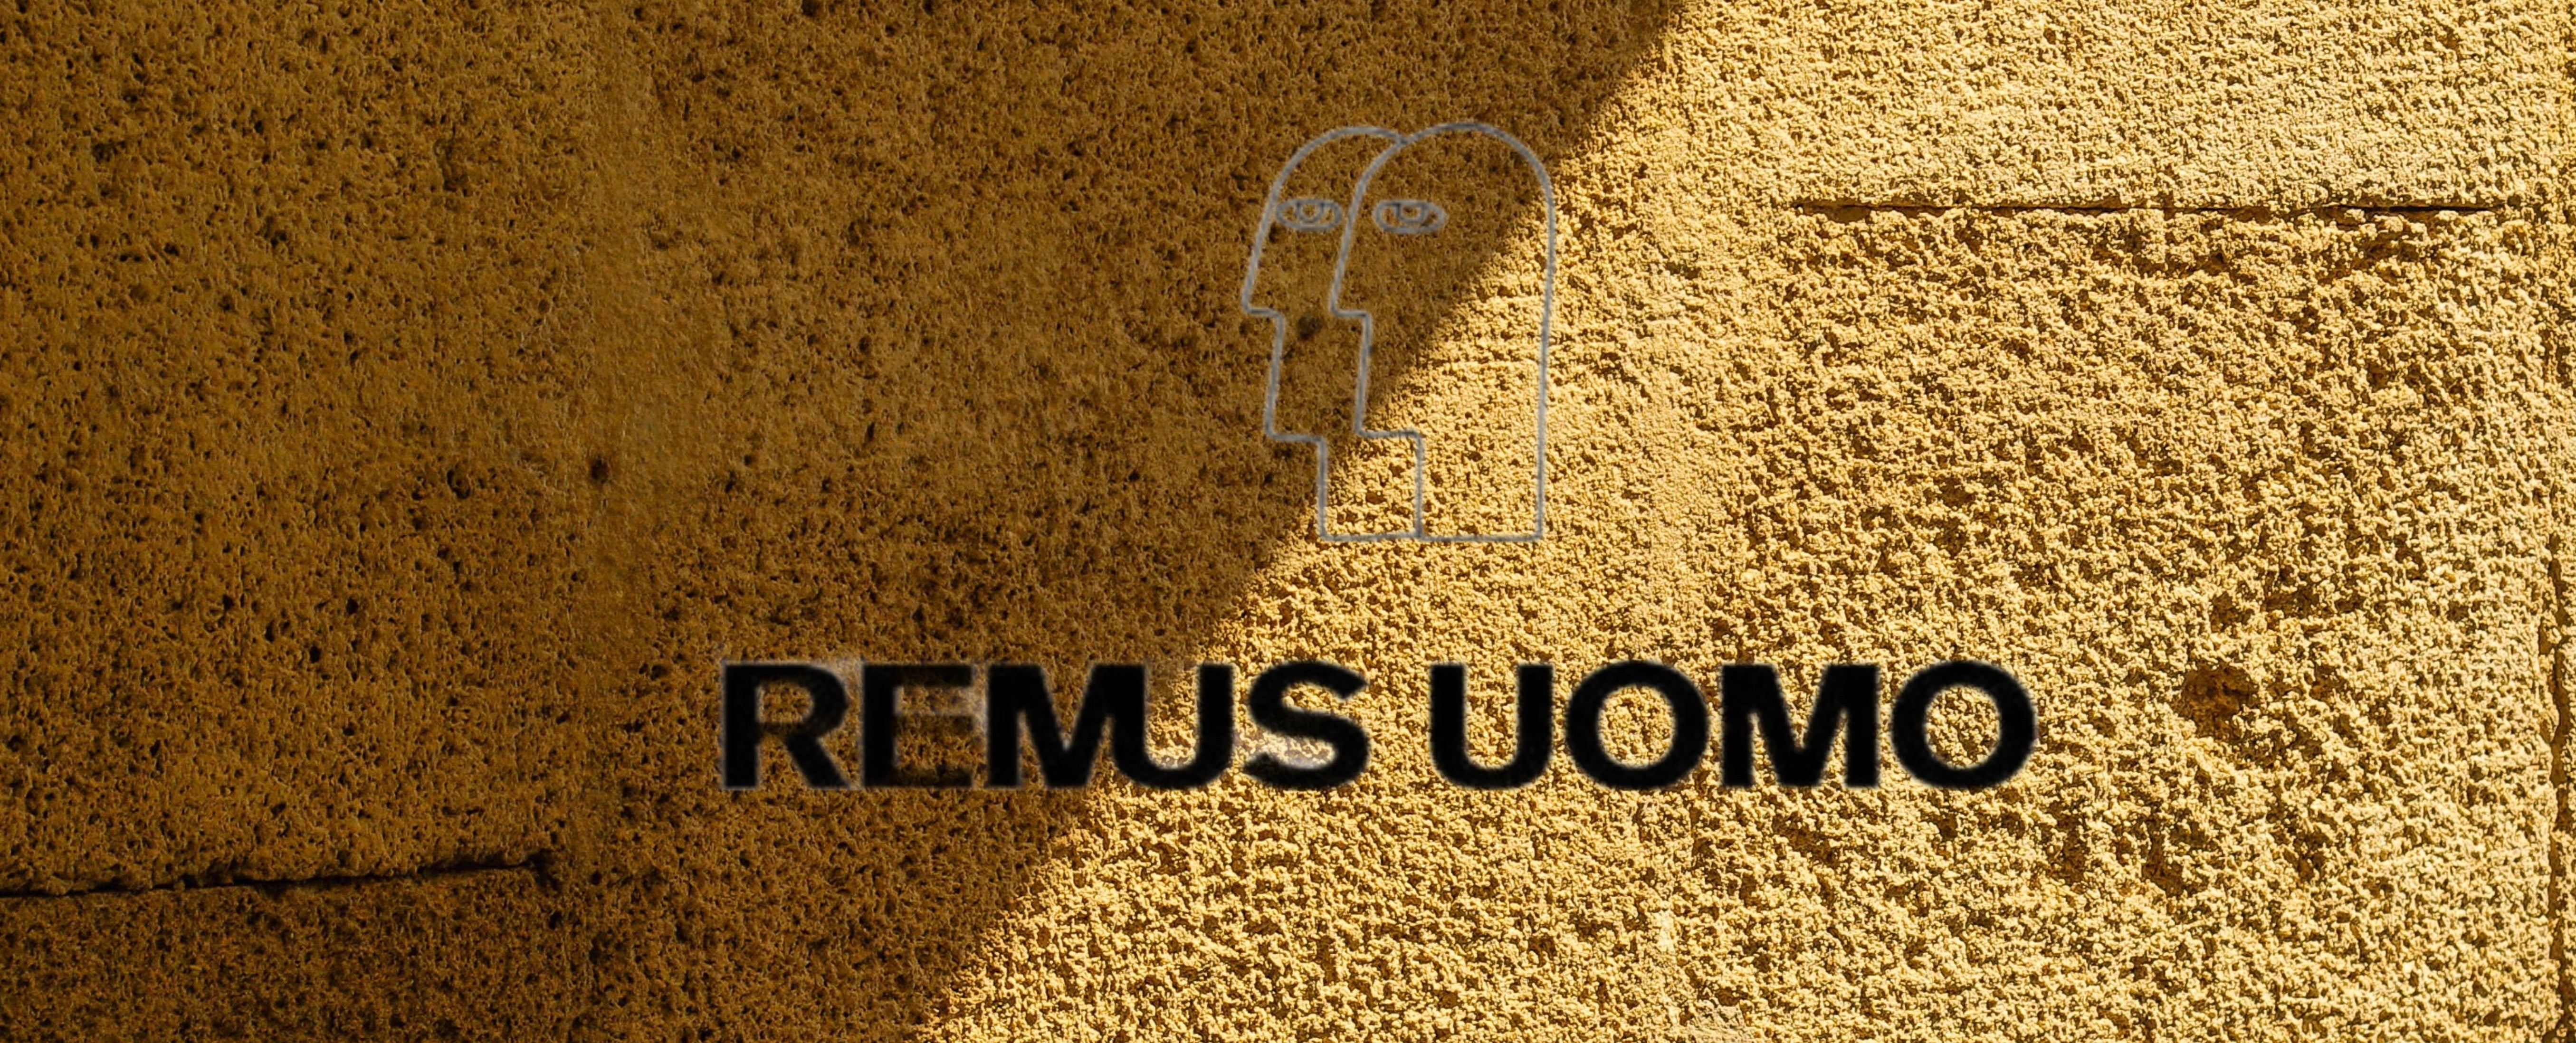 Remus Uomo Slider Blurred Background